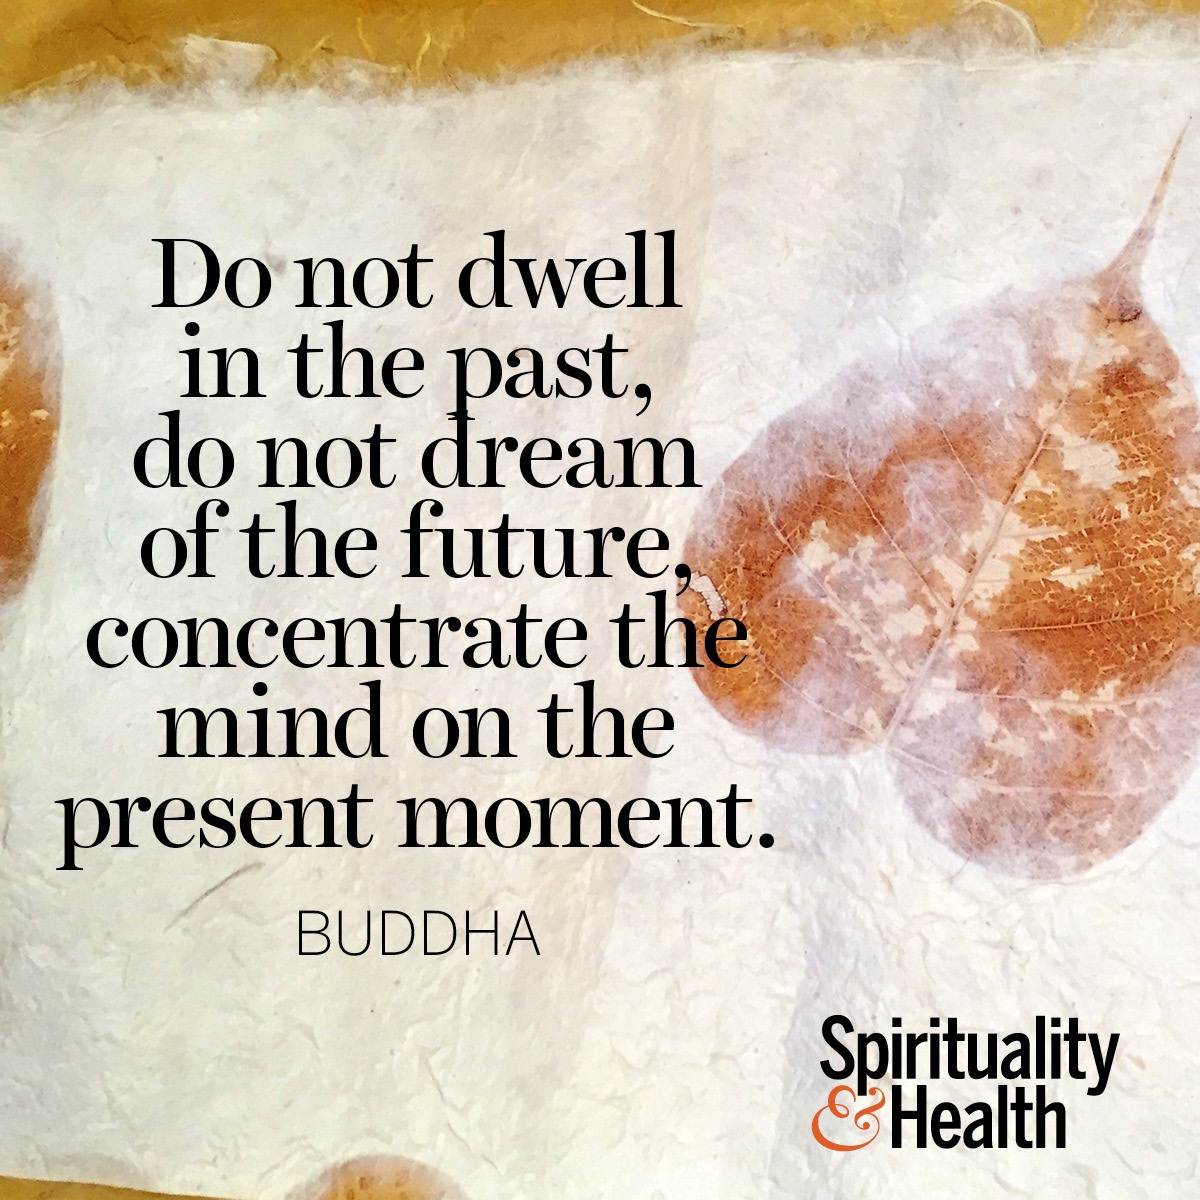 Buddha On The Present Moment Spirituality Health